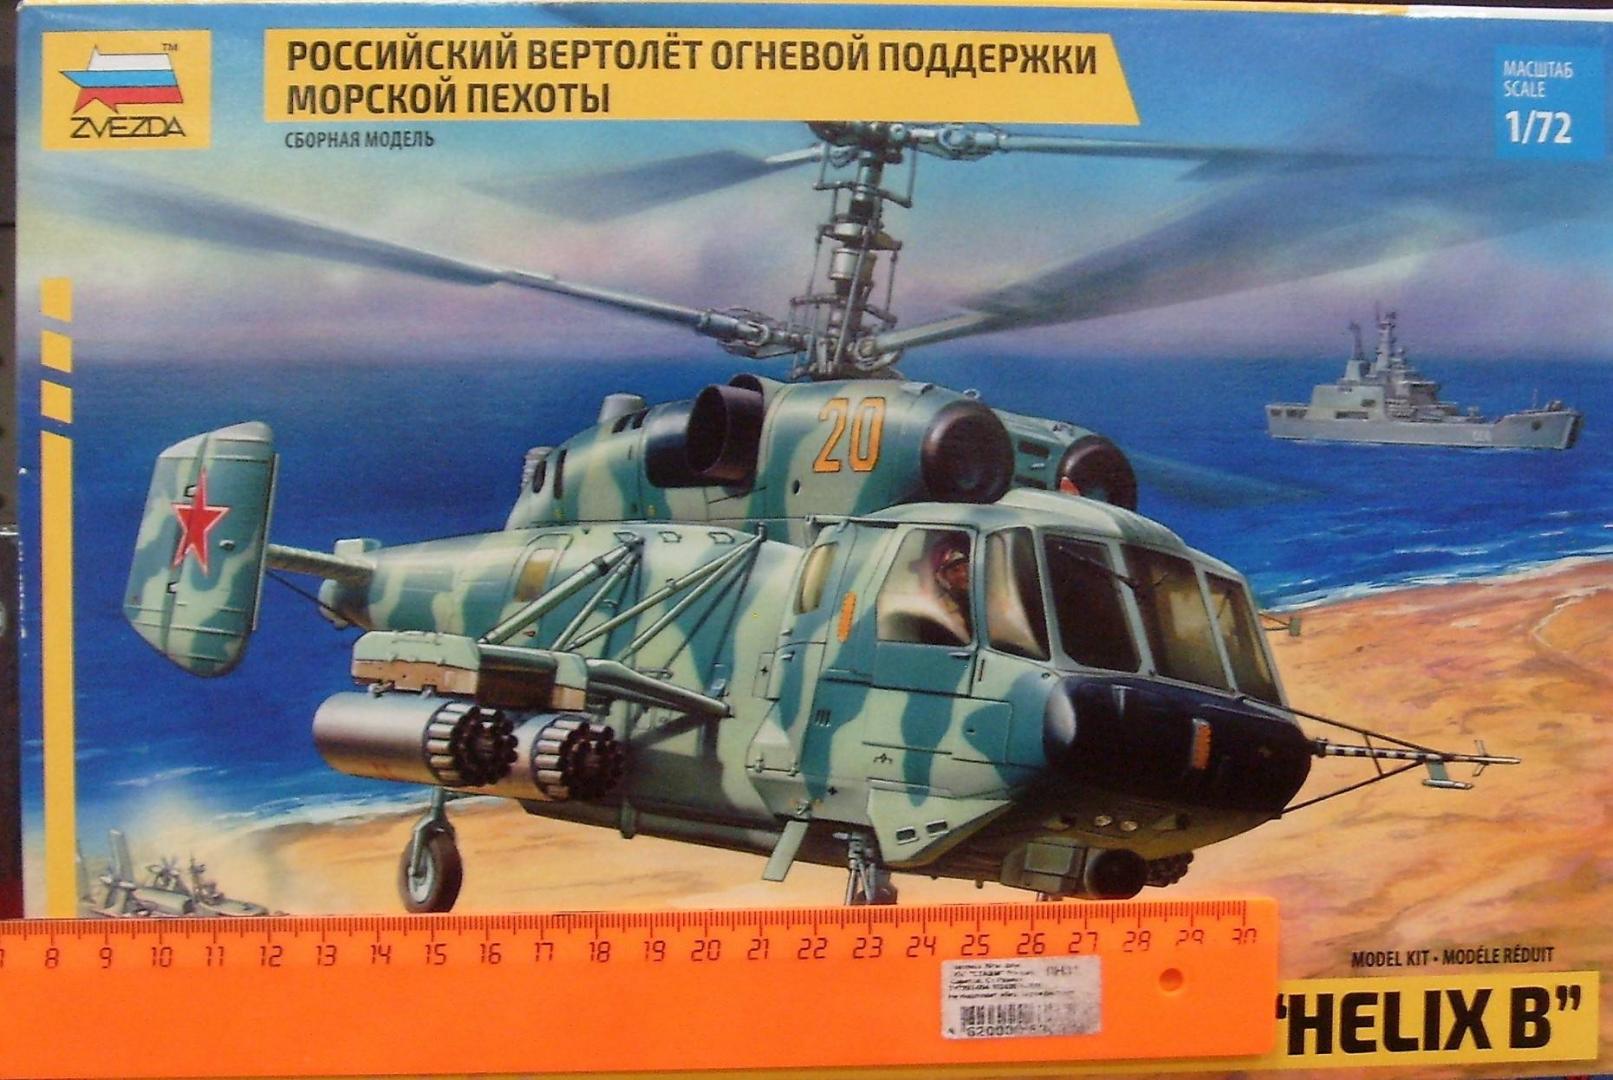 Иллюстрация 3 из 11 для 7221/Советский вертолет огневой поддержки Ка-29 | Лабиринт - игрушки. Источник: Соловьев  Владимир